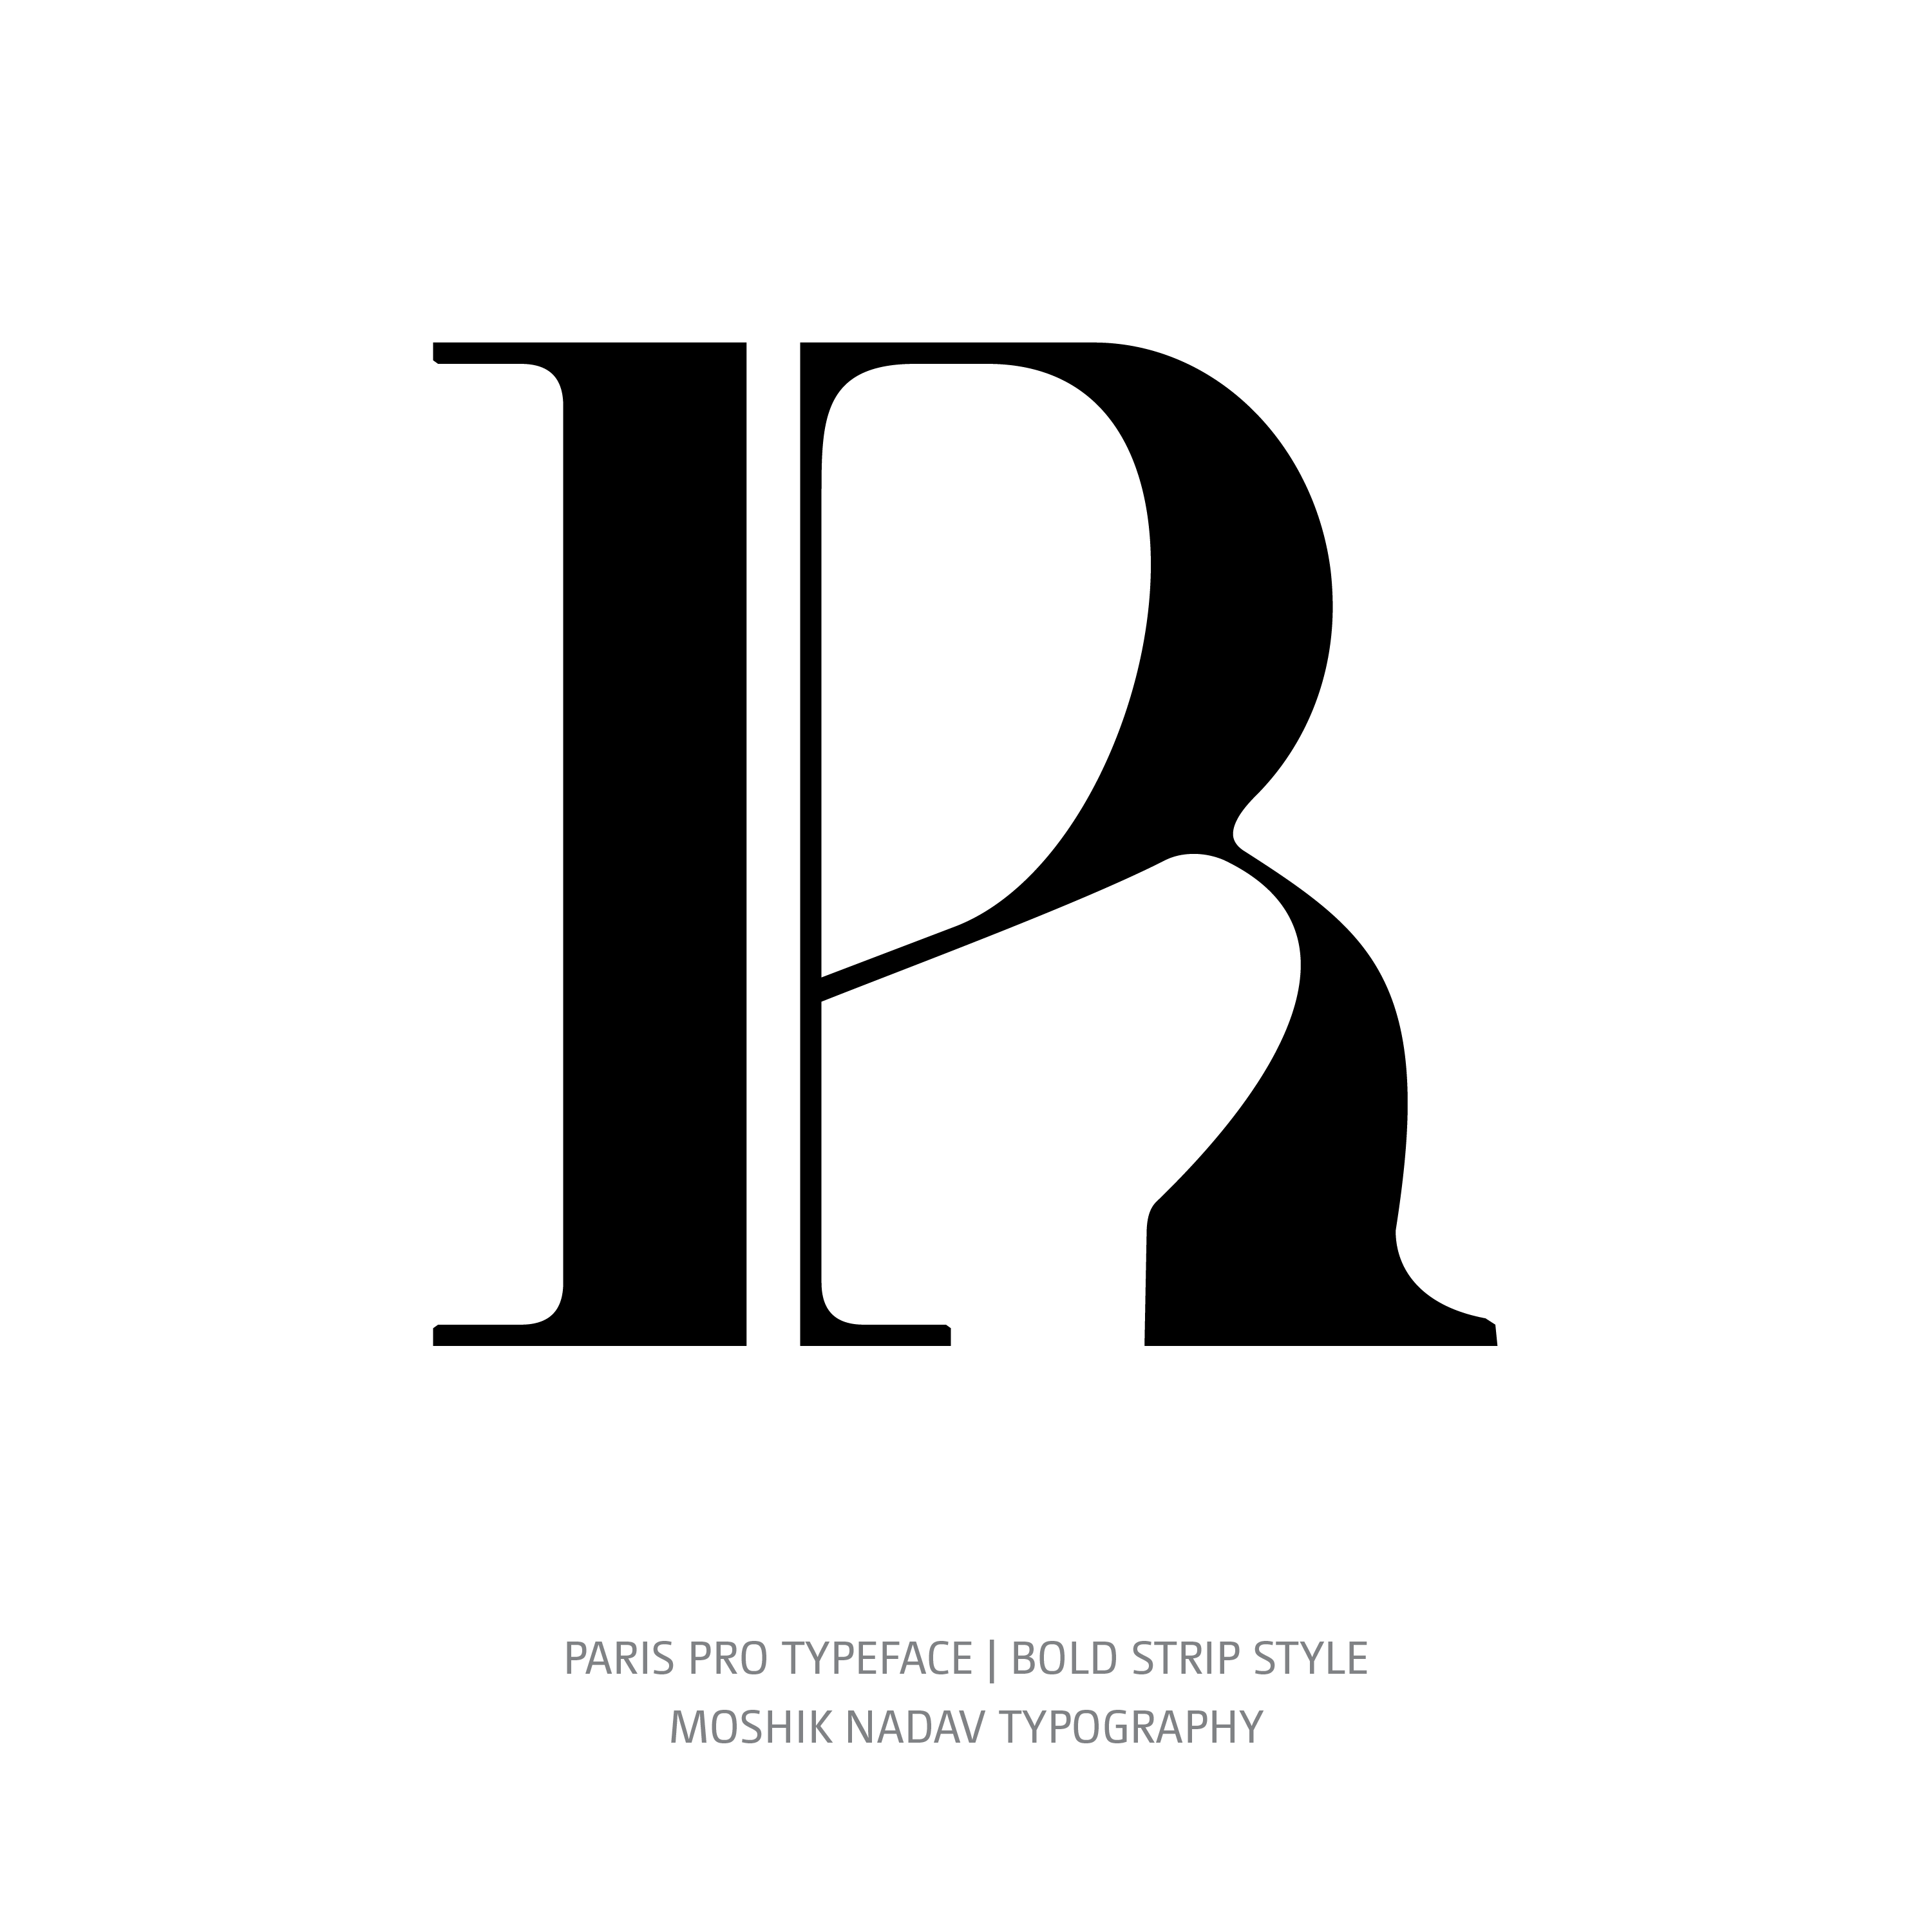 Paris Pro Typeface Bold Strip R